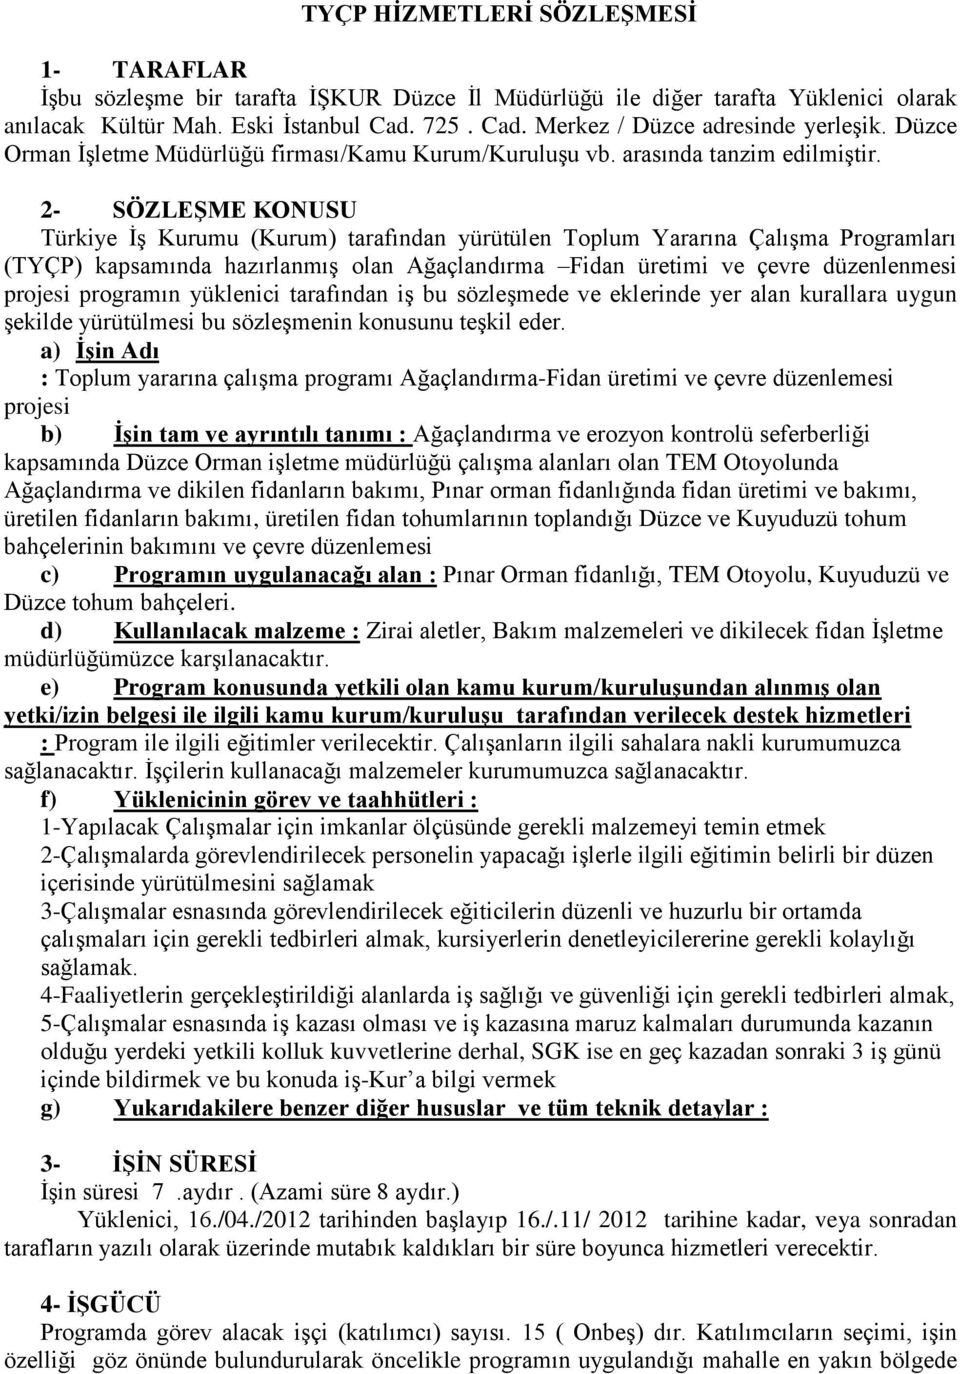 2- SÖZLEŞME KONUSU Türkiye İş Kurumu (Kurum) tarafından yürütülen Toplum Yararına Çalışma Programları (TYÇP) kapsamında hazırlanmış olan Ağaçlandırma Fidan üretimi ve çevre düzenlenmesi projesi